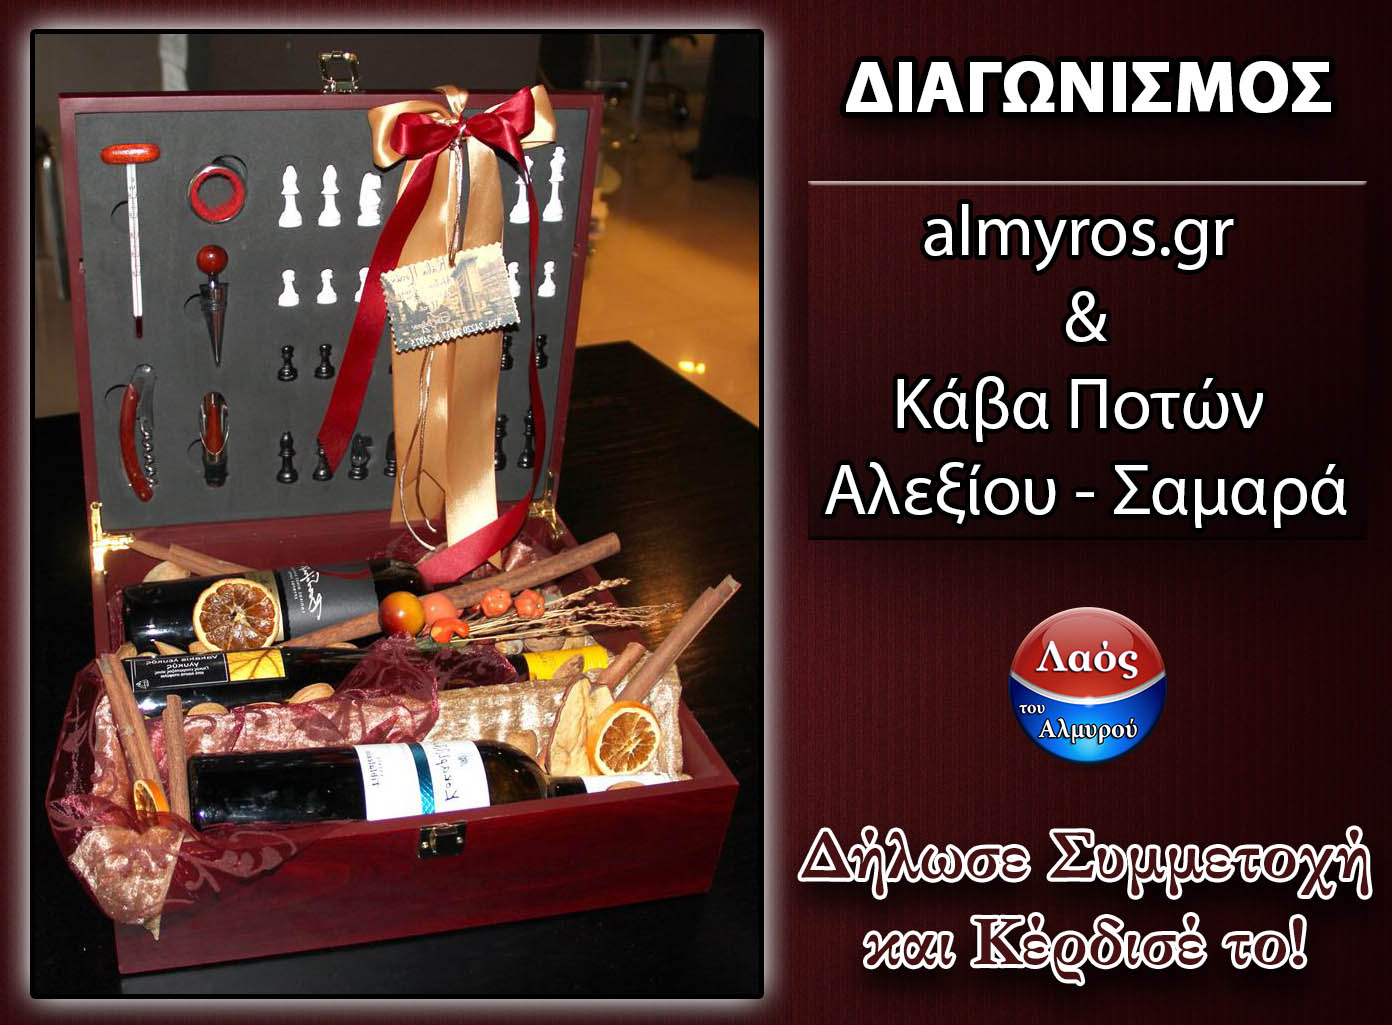 Διαγωνισμός e-almyros.gr